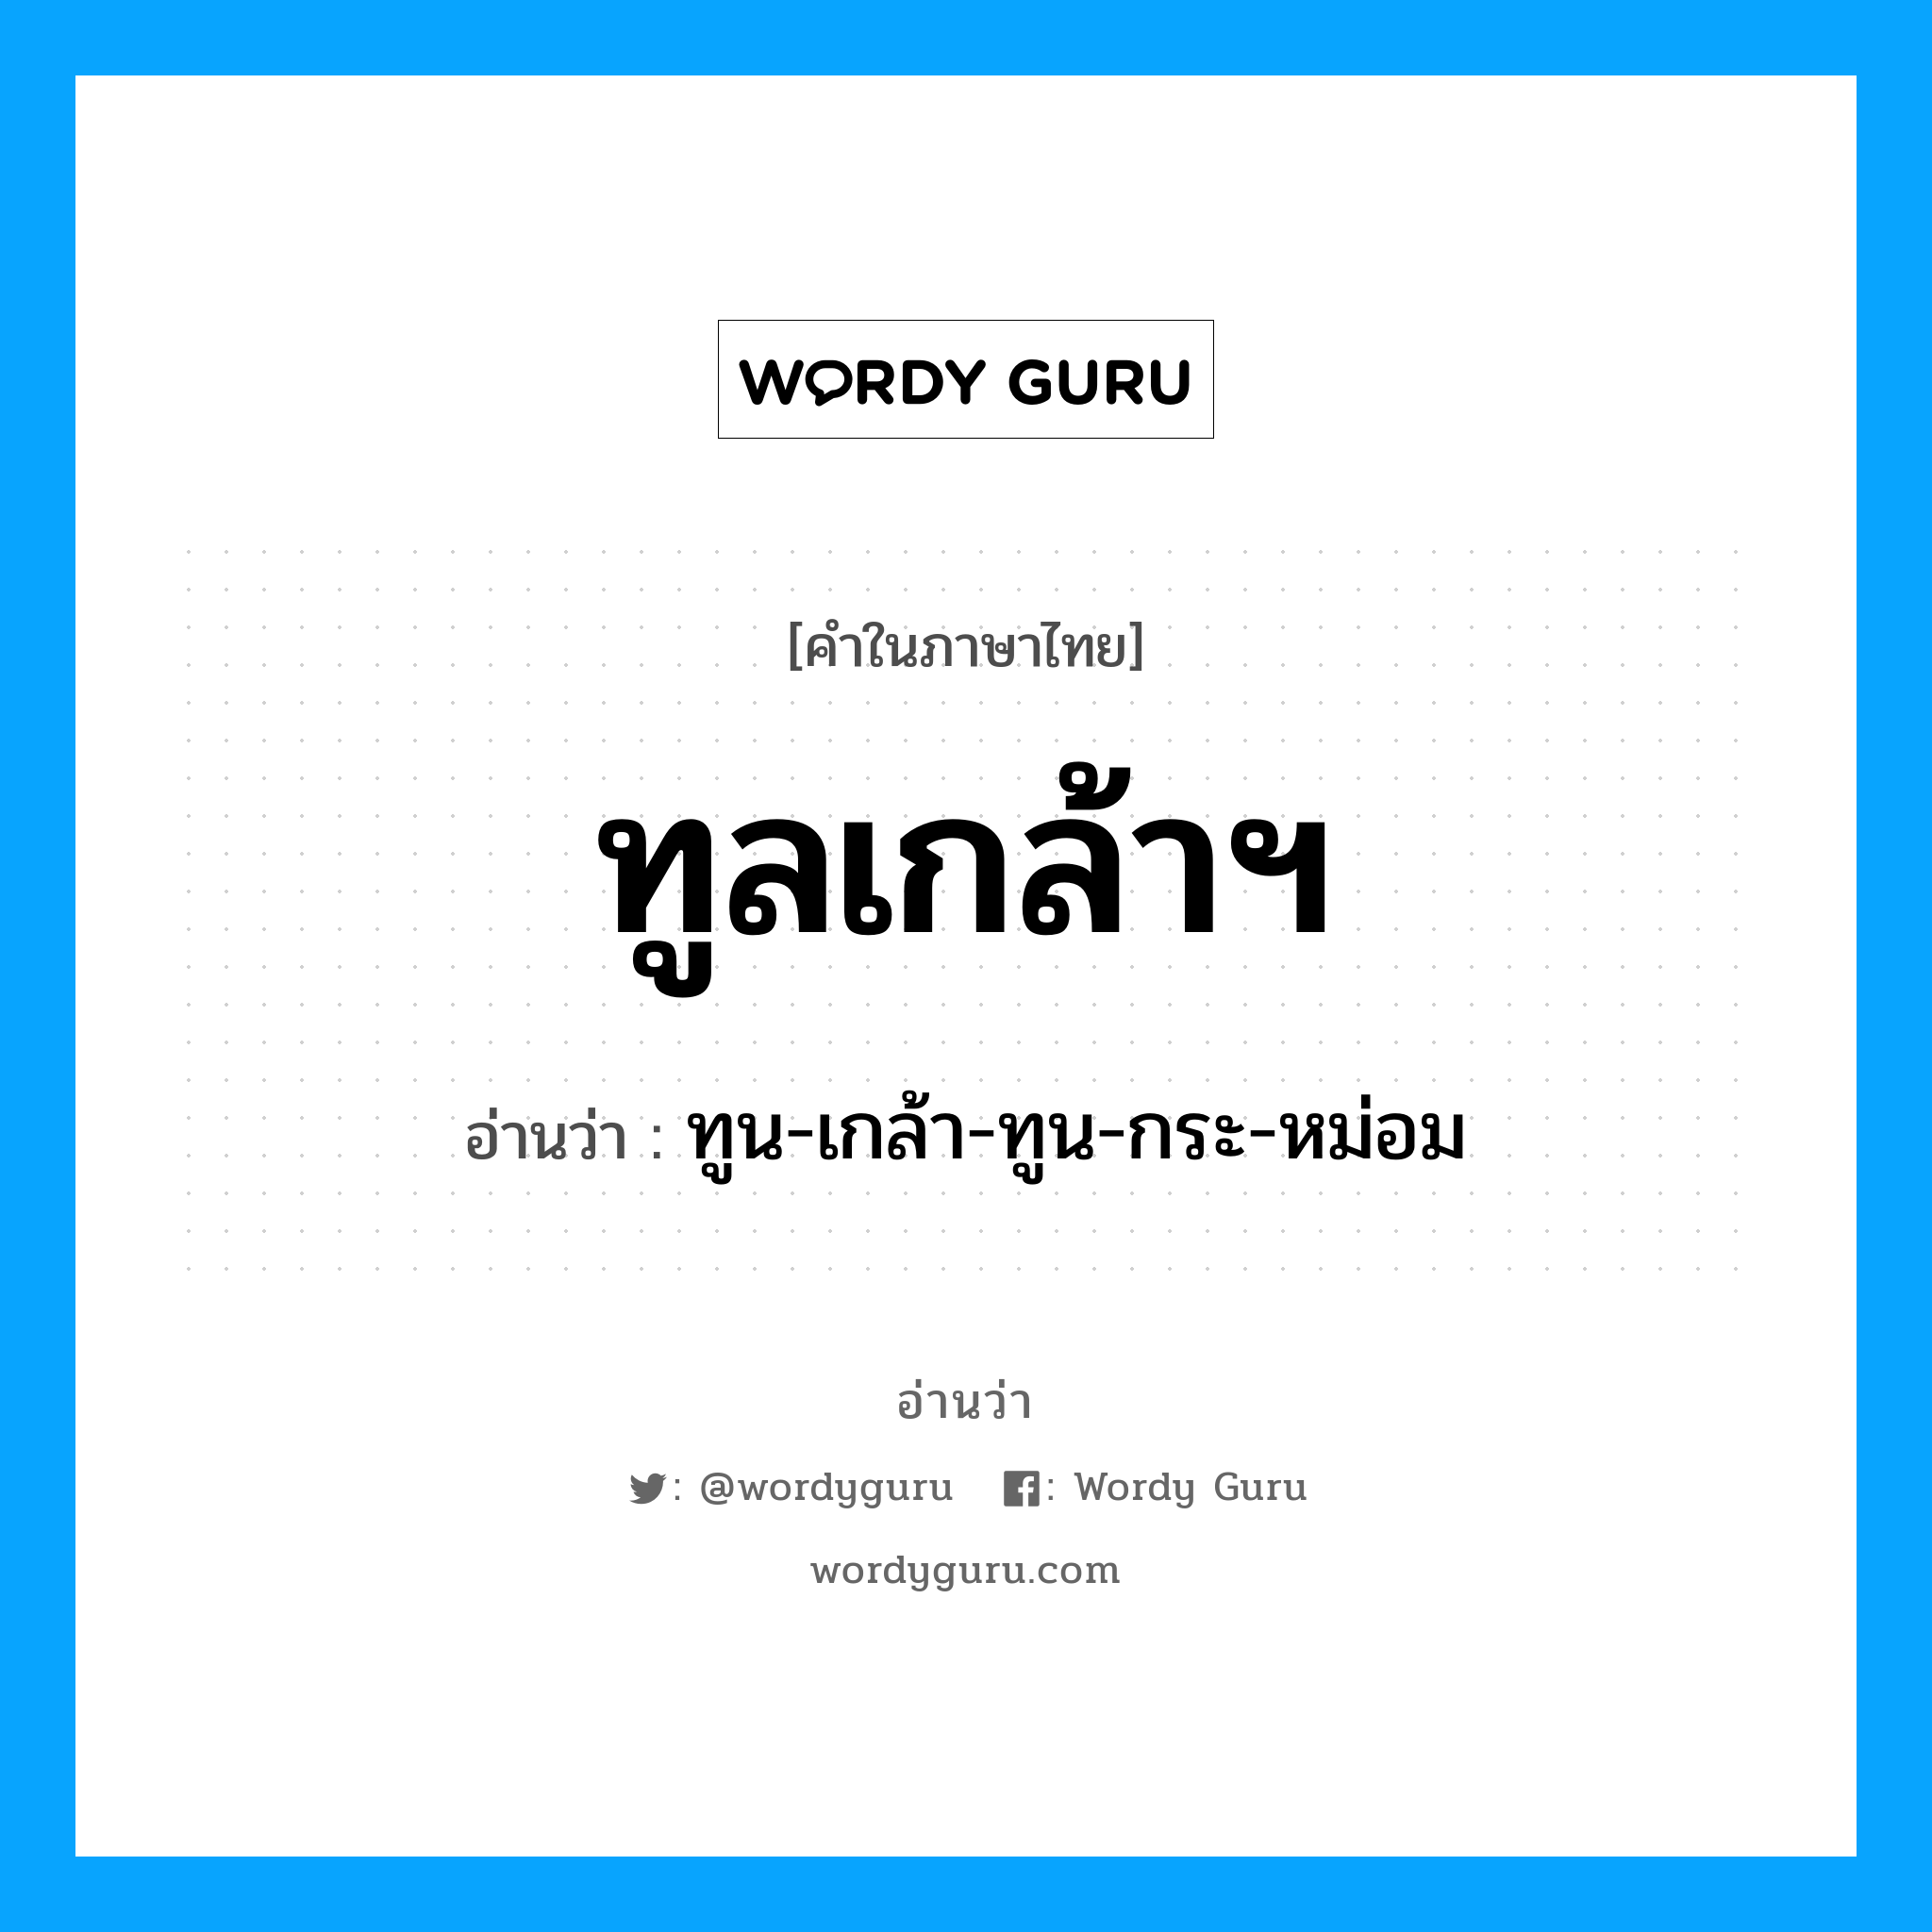 ทูน-เกล้า-ทูน-กระ-หม่อม เป็นคำอ่านของคำไหน?, คำในภาษาไทย ทูน-เกล้า-ทูน-กระ-หม่อม อ่านว่า ทูลเกล้าฯ